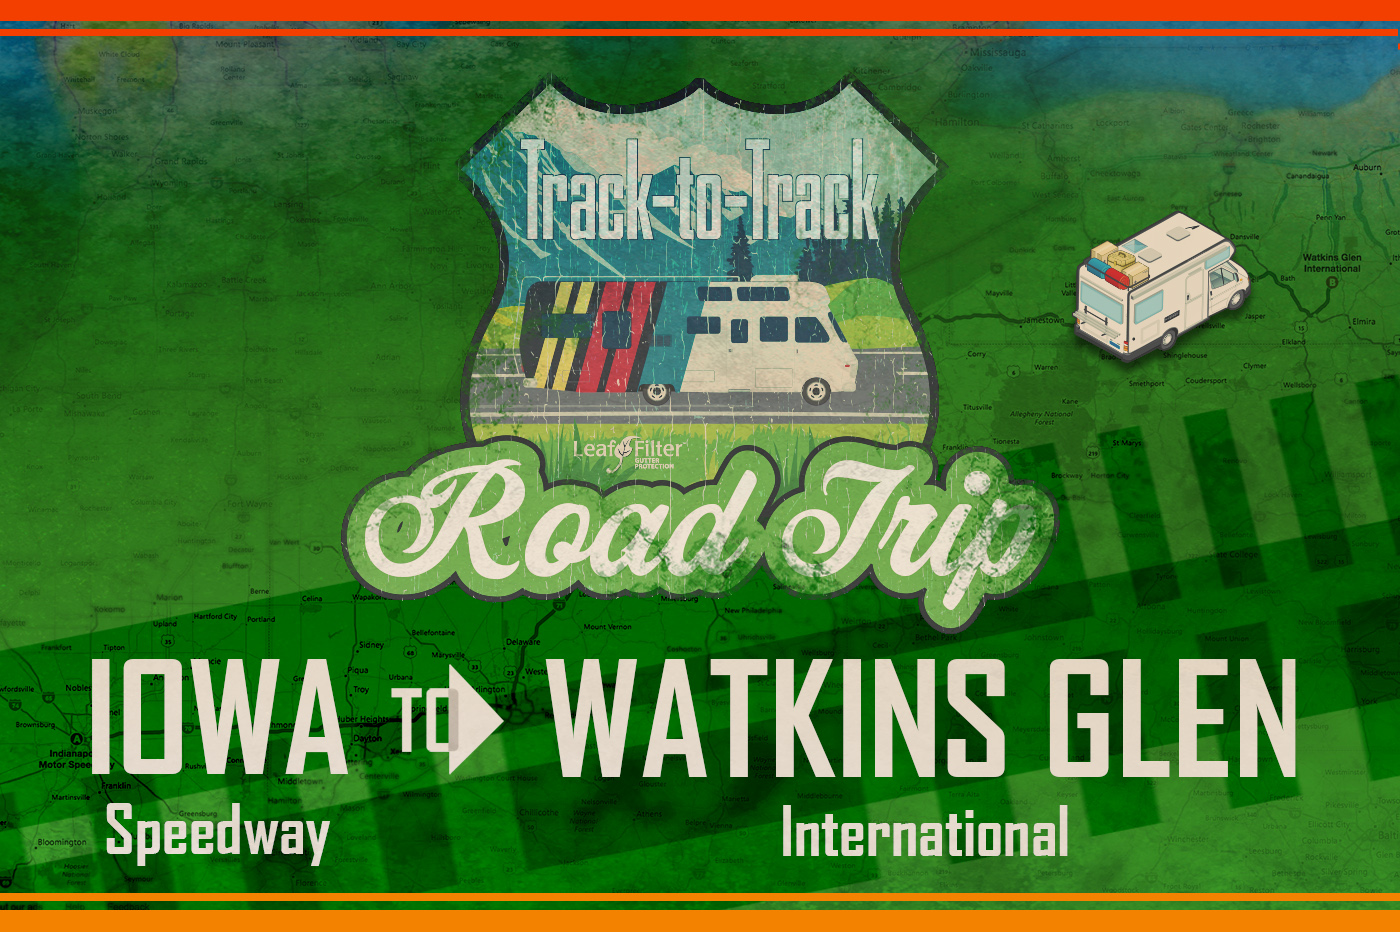 Track-to-Track Road Trip Part 6: Iowa Speedway to Watkins Glen International